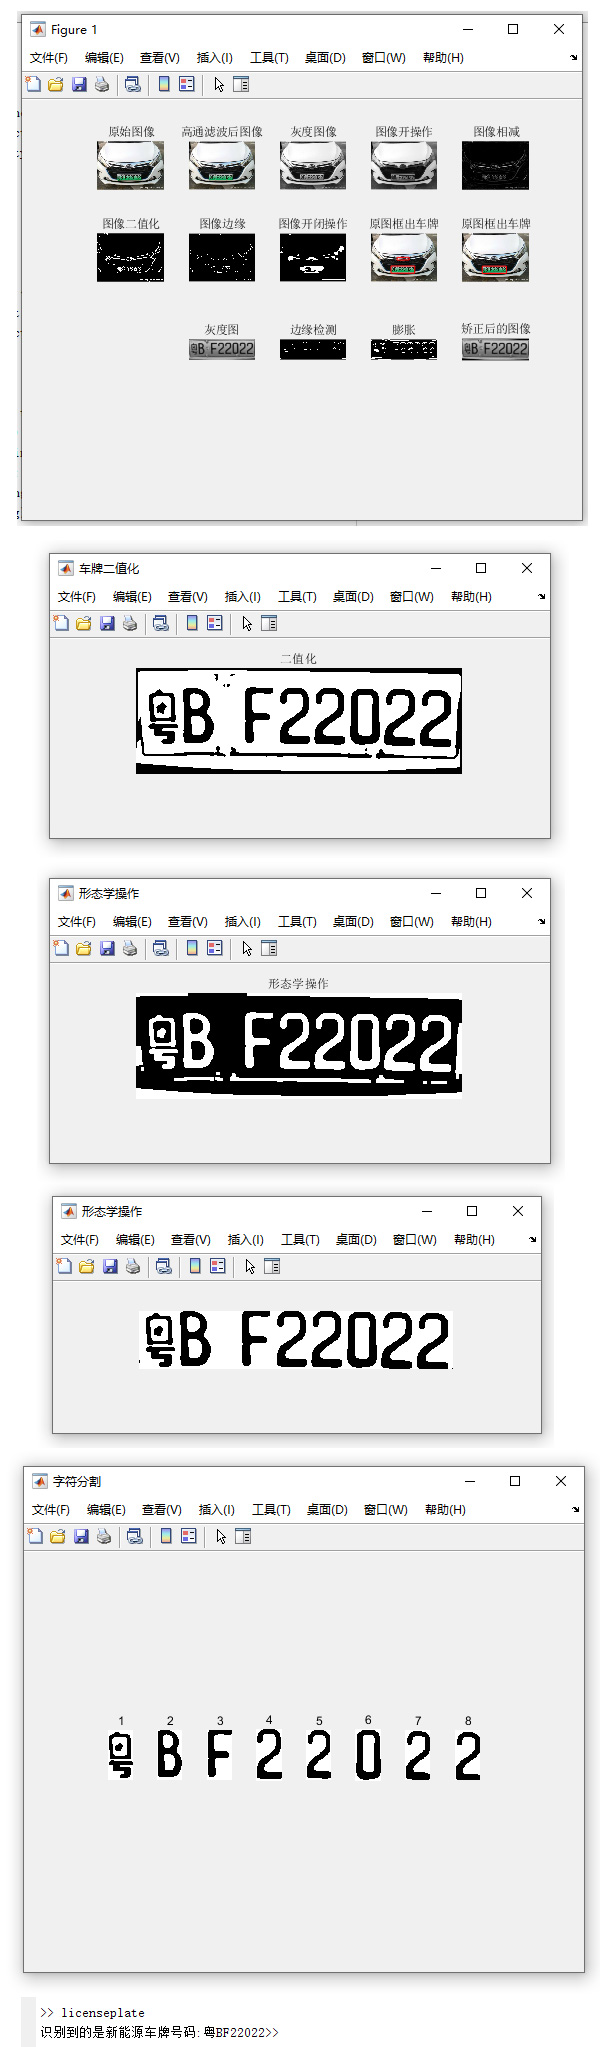 【C153】Matlab实现车牌识别(蓝色车牌和新能源车牌)